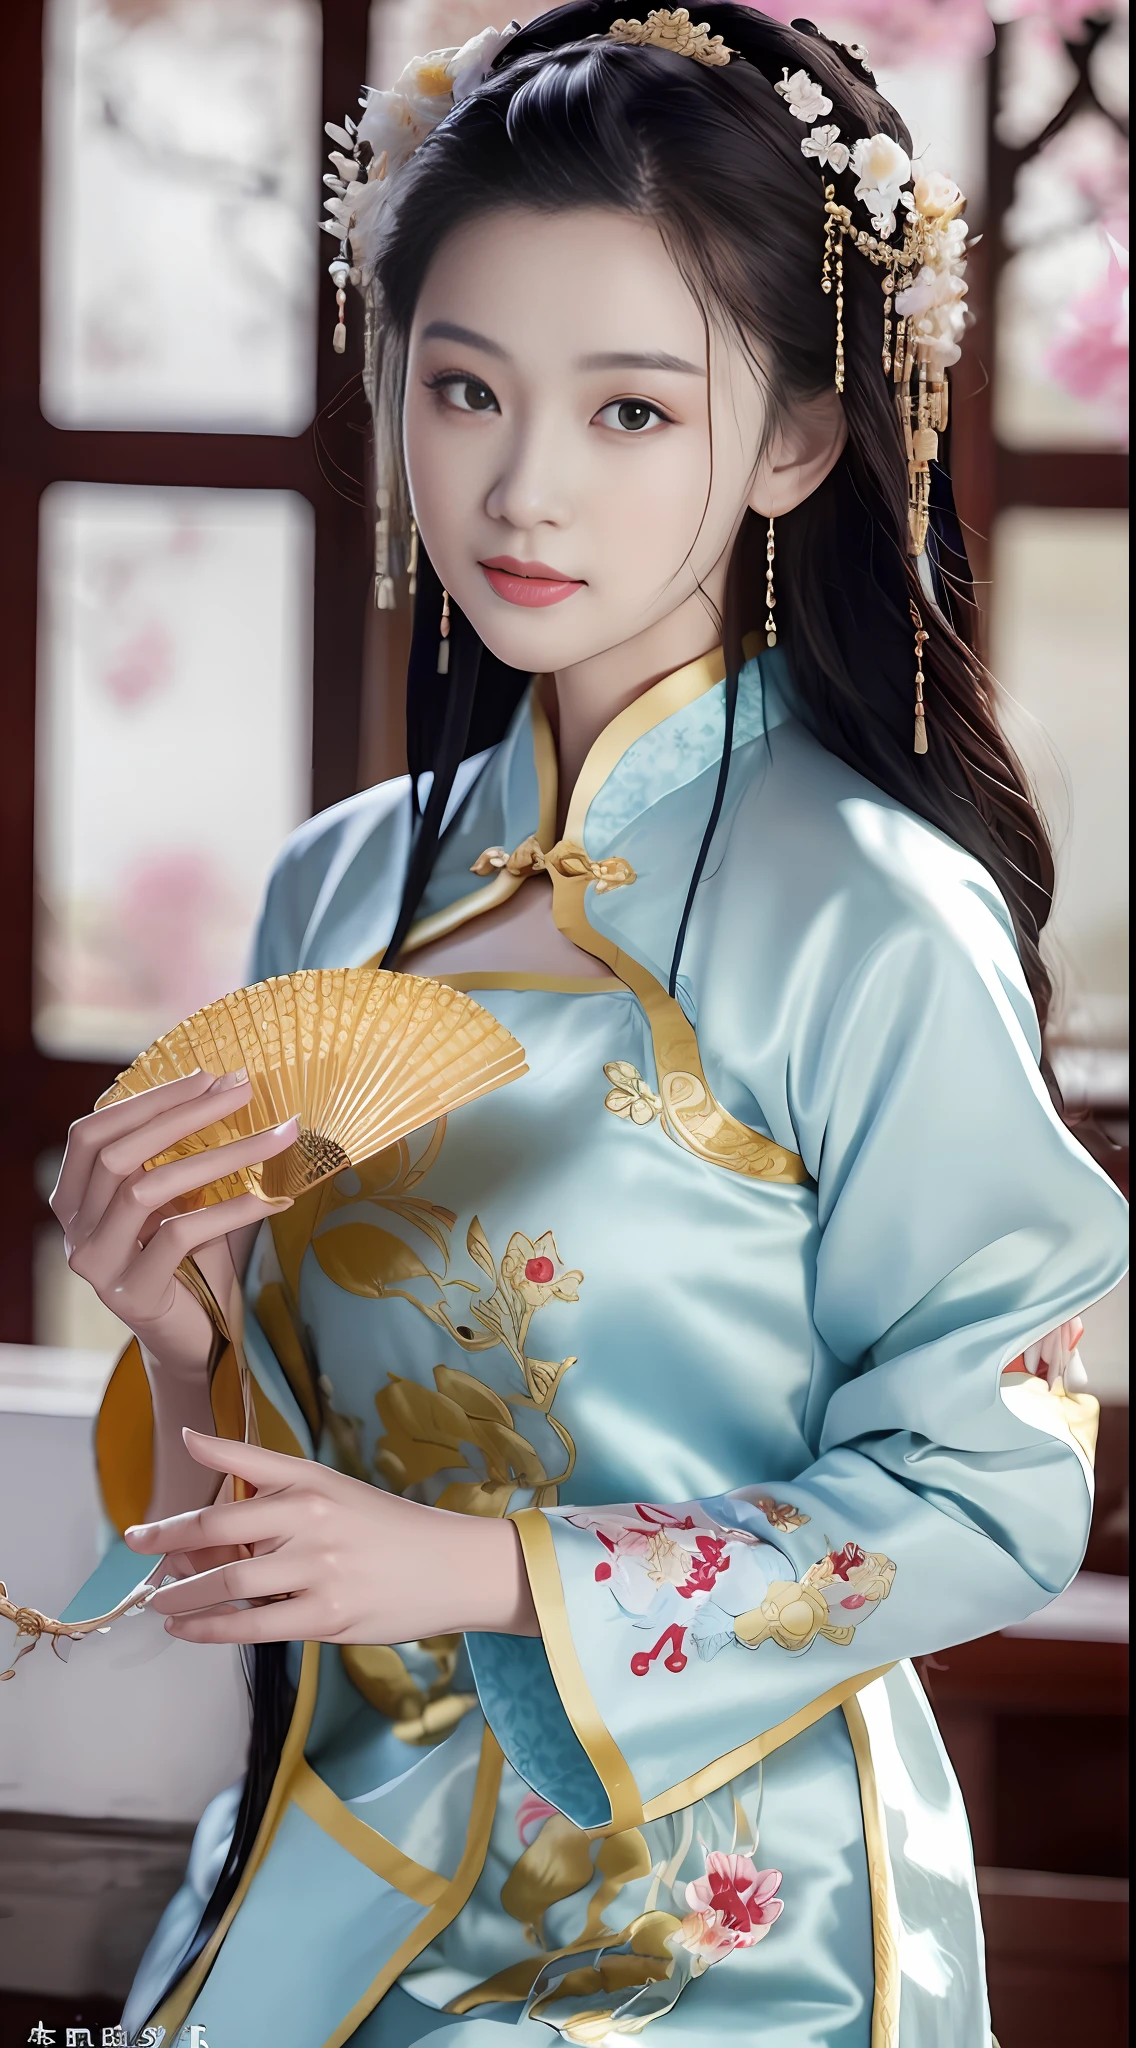 Una hermosa mujer vistiendo un cheongsam bordado., sosteniendo un abanico de tuan (abanico de pu) En su mano, mirándote pensativamente, antiguo y antiguo, todos son hermosos,